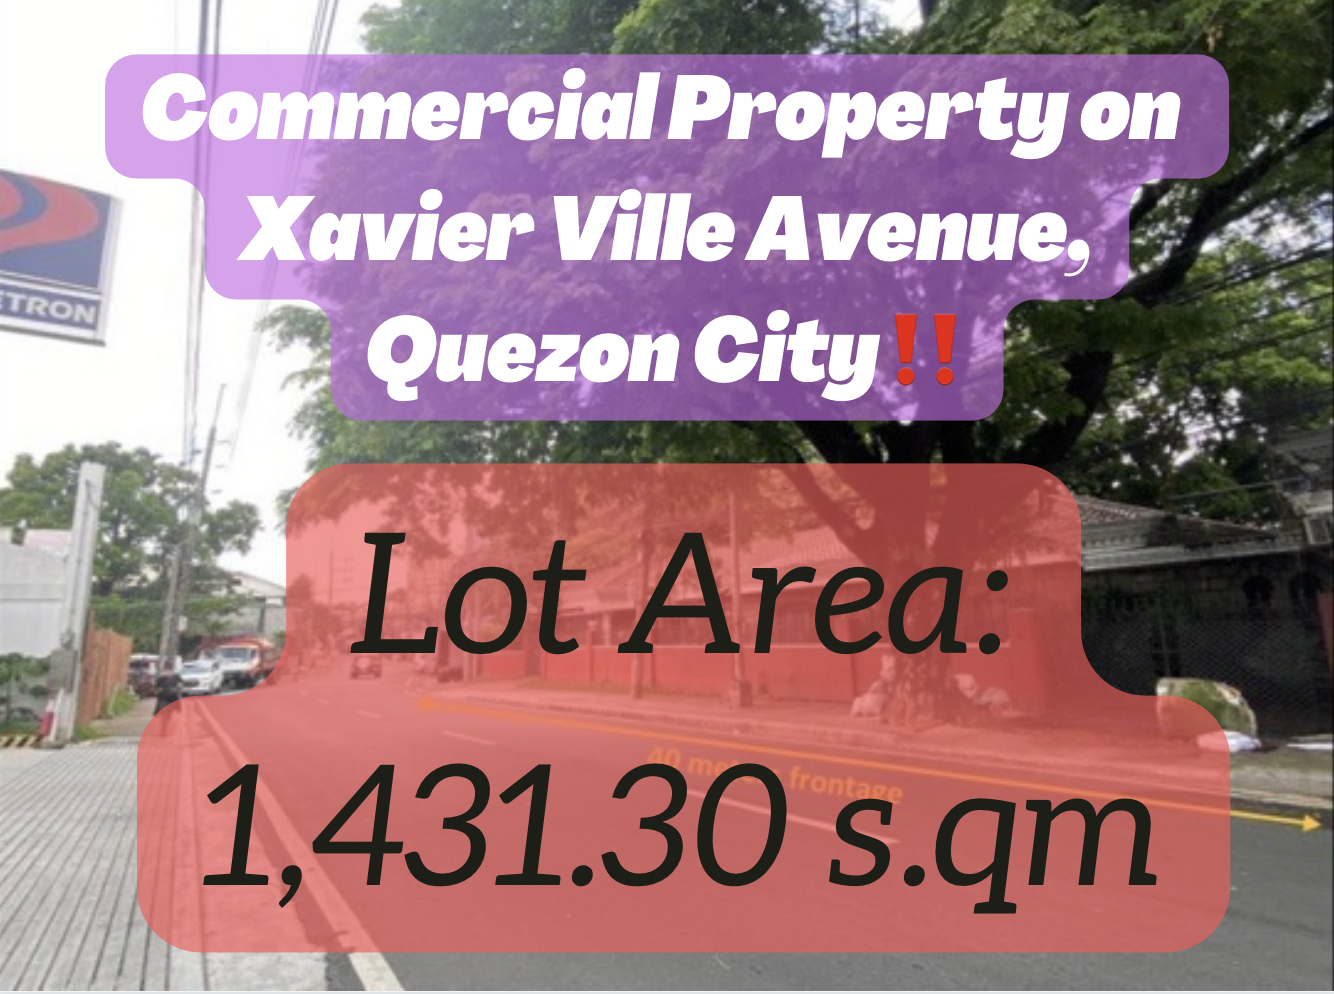 Along Xavierville Avenue, Q.C. – Commercial Lot